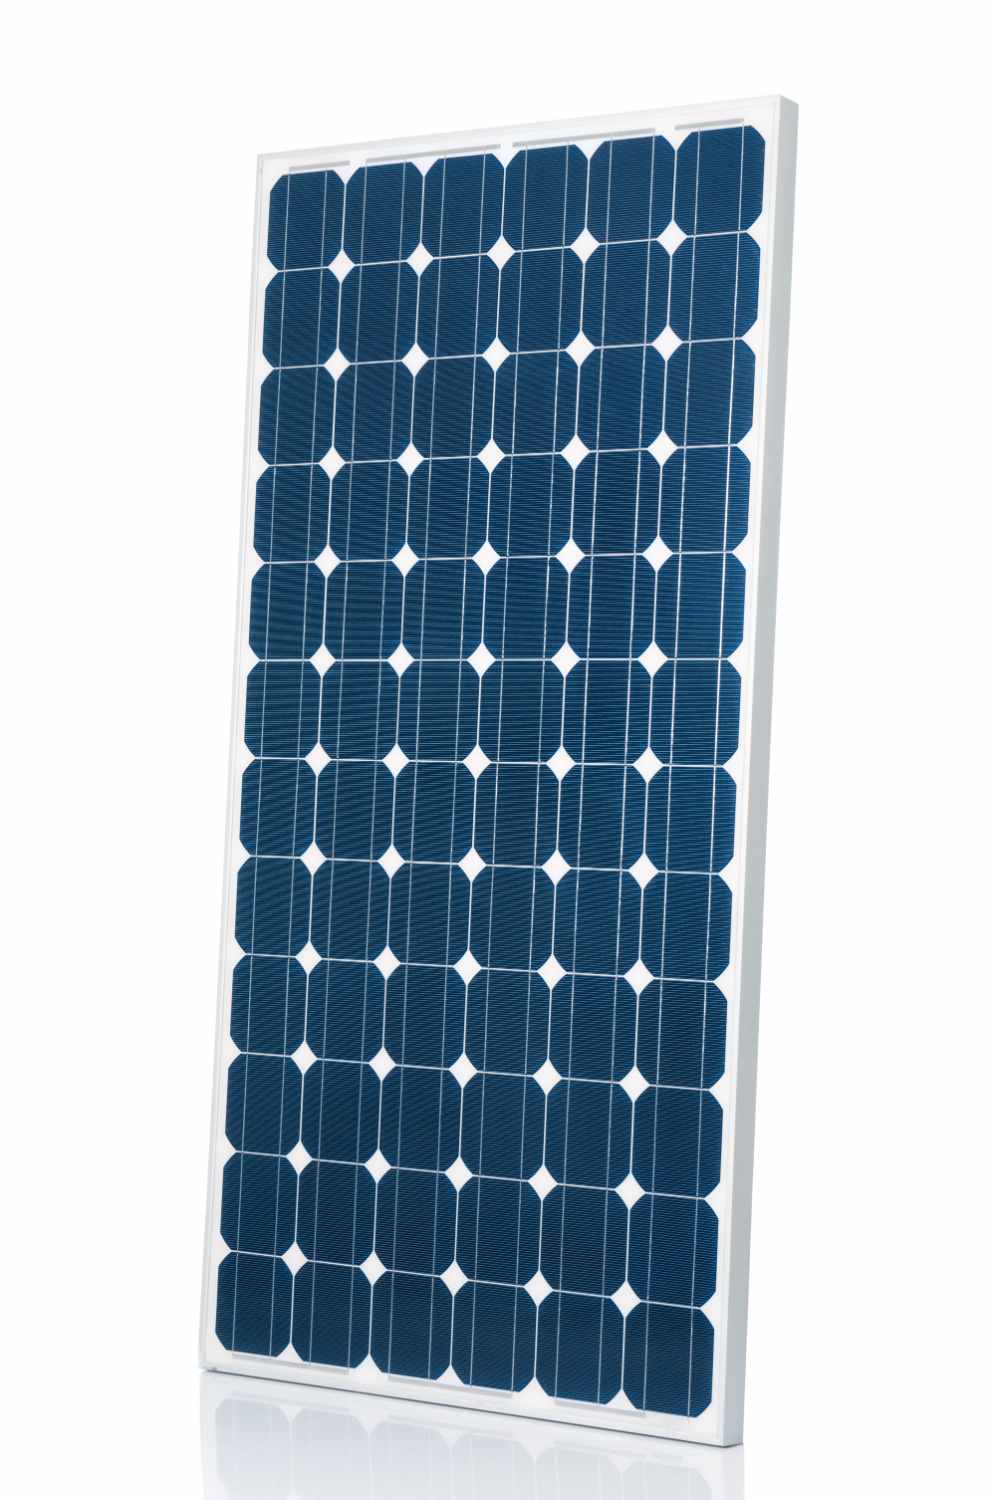 Solar Panel In UK